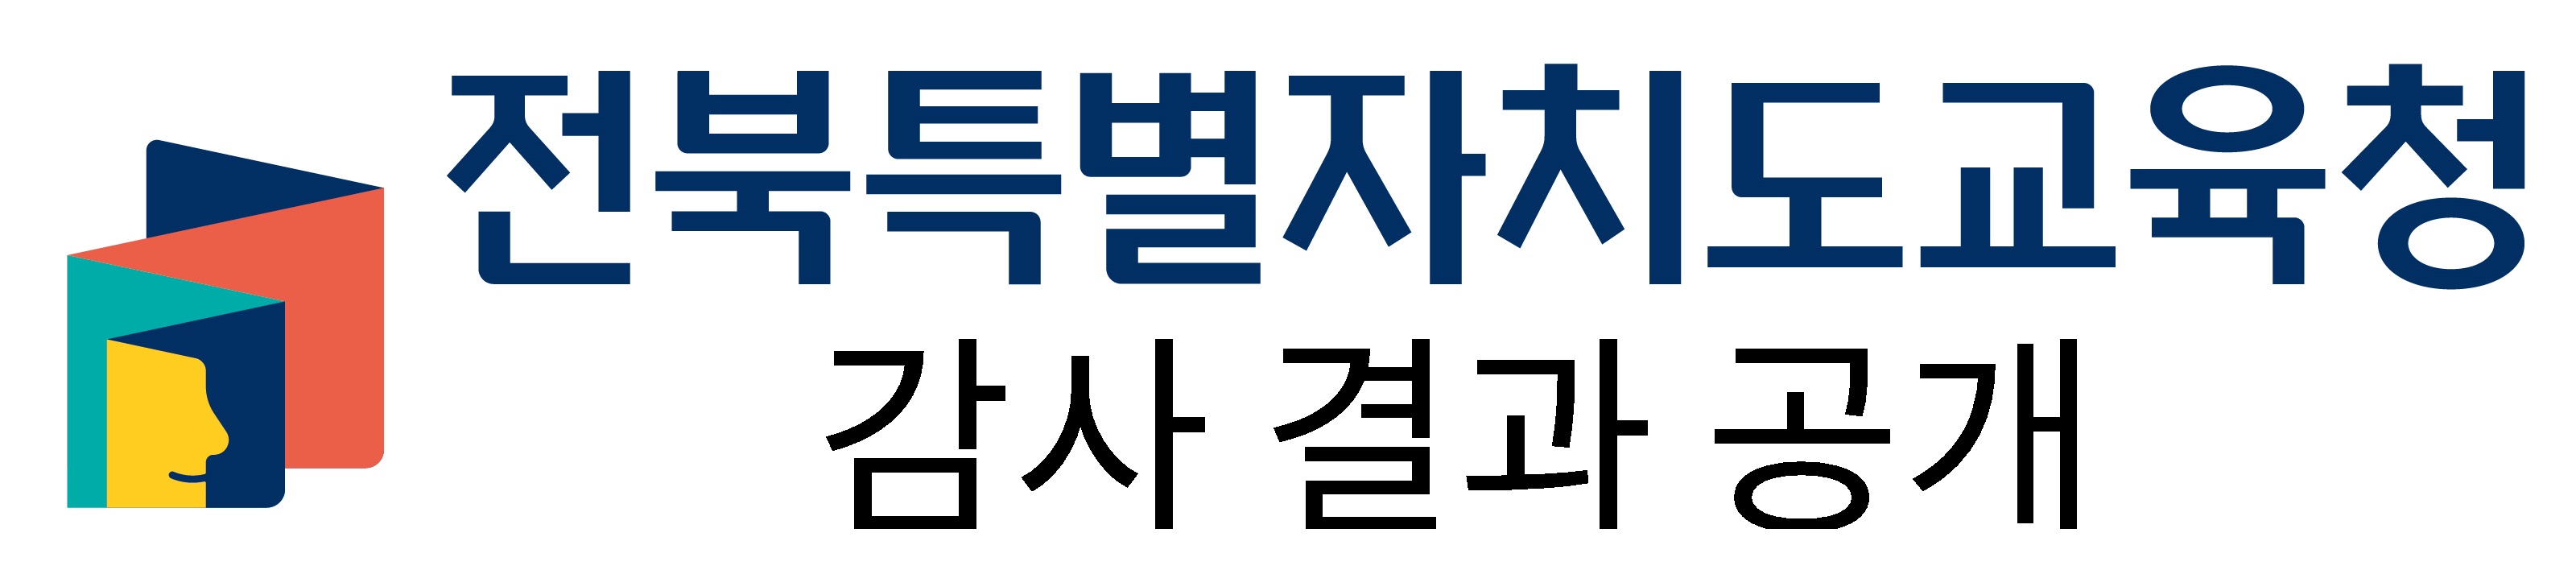 전북특별자치도교육청 감사결과공개